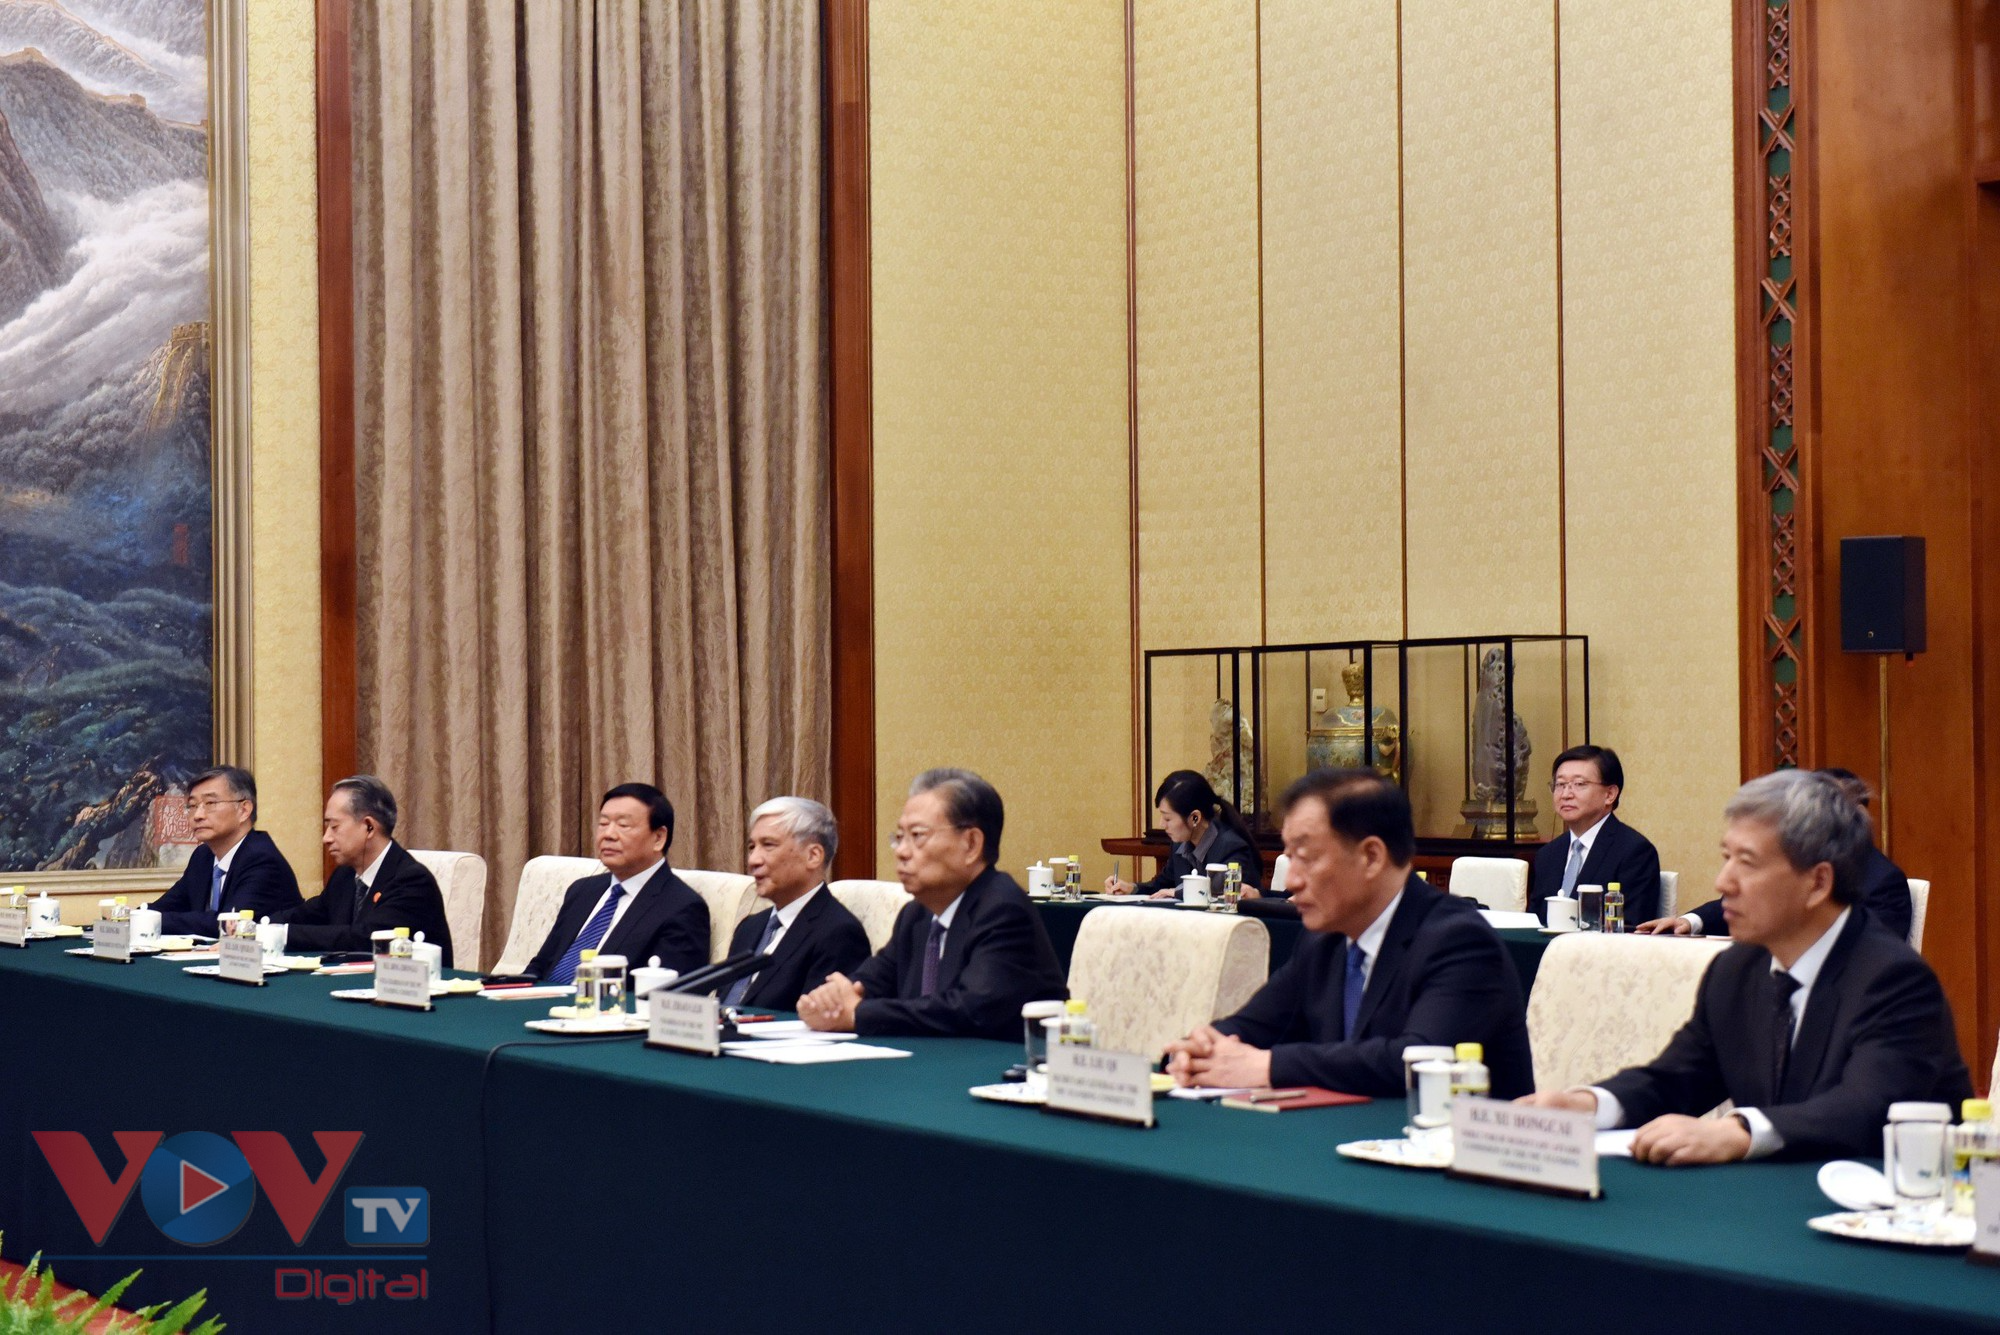 Chủ tịch nước hội kiến Ủy viên trưởng Nhân đại toàn quốc Trung Quốc - Ảnh 4.